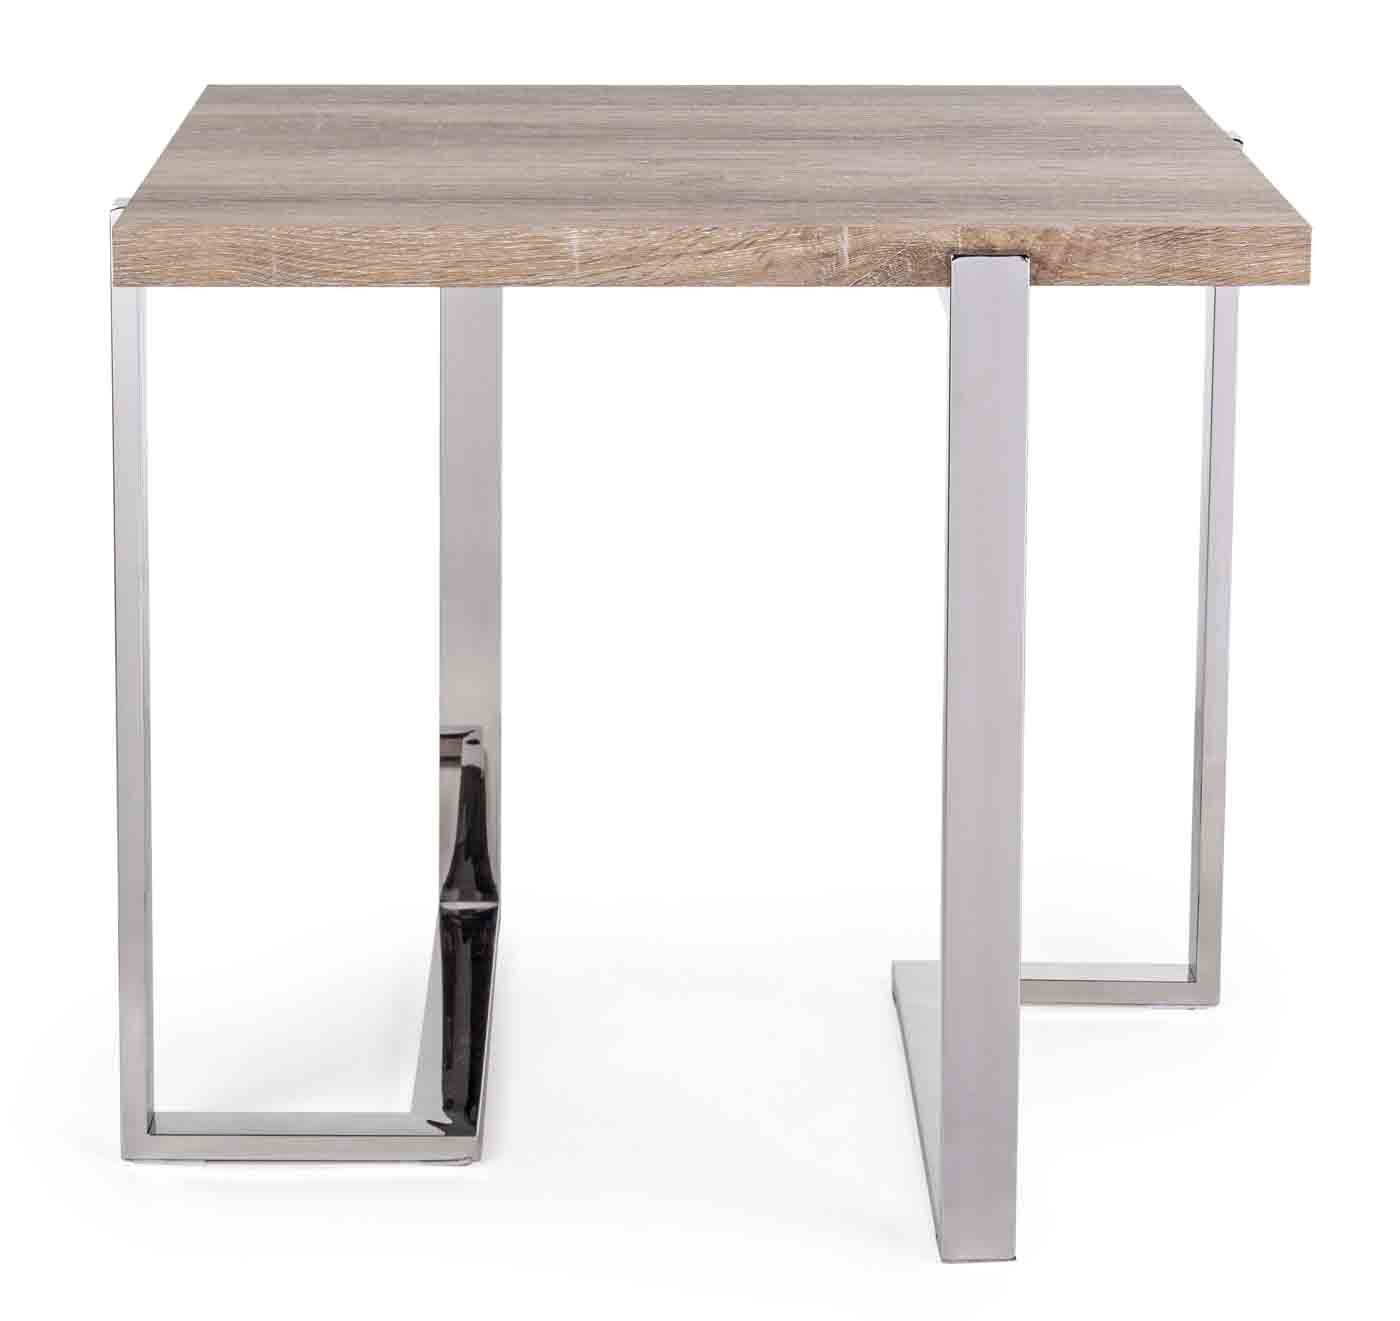 Beistelltisch Ismael in einem modernen Design. Gefertigt aus einem Edelstahl Gestell. Die Tischplatte ist aus MDF Holz. Marke Bizotto.